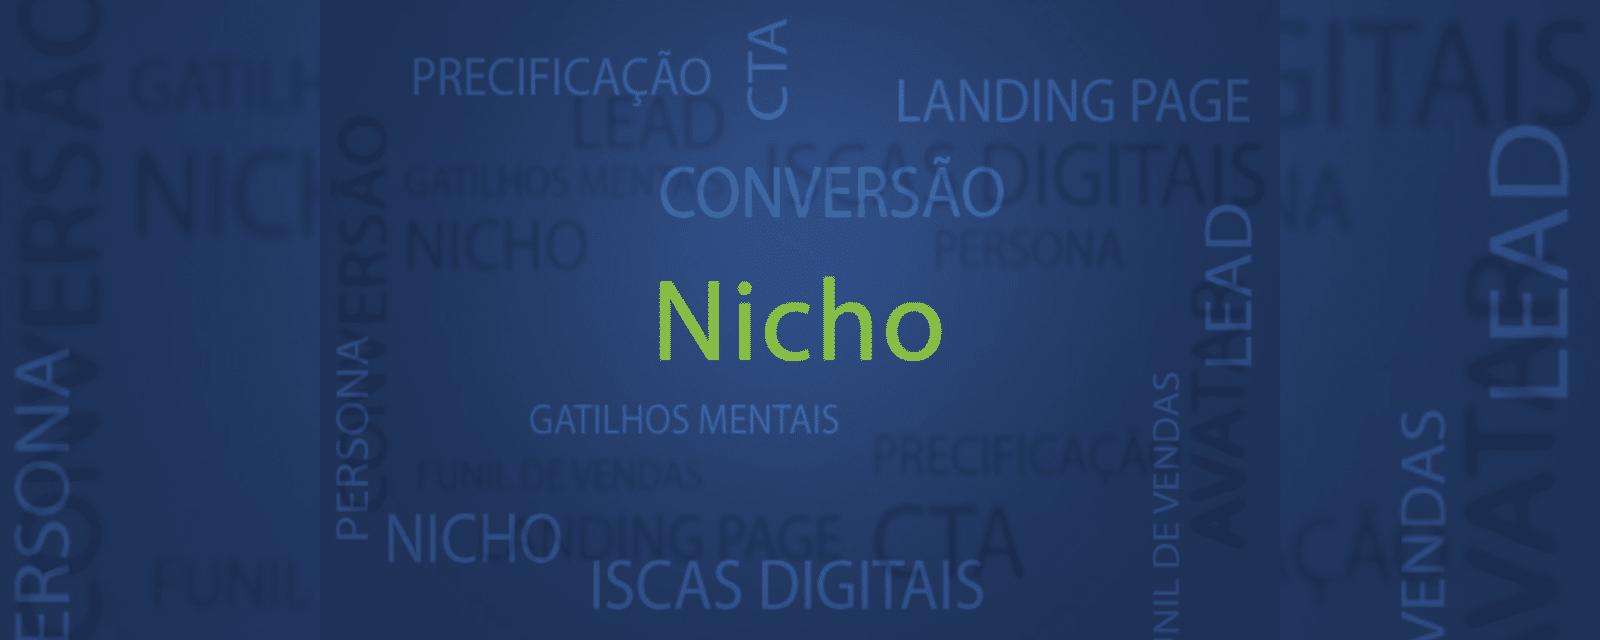 O Poder do Marketing de Influência de Nicho: Construindo Credibilidade